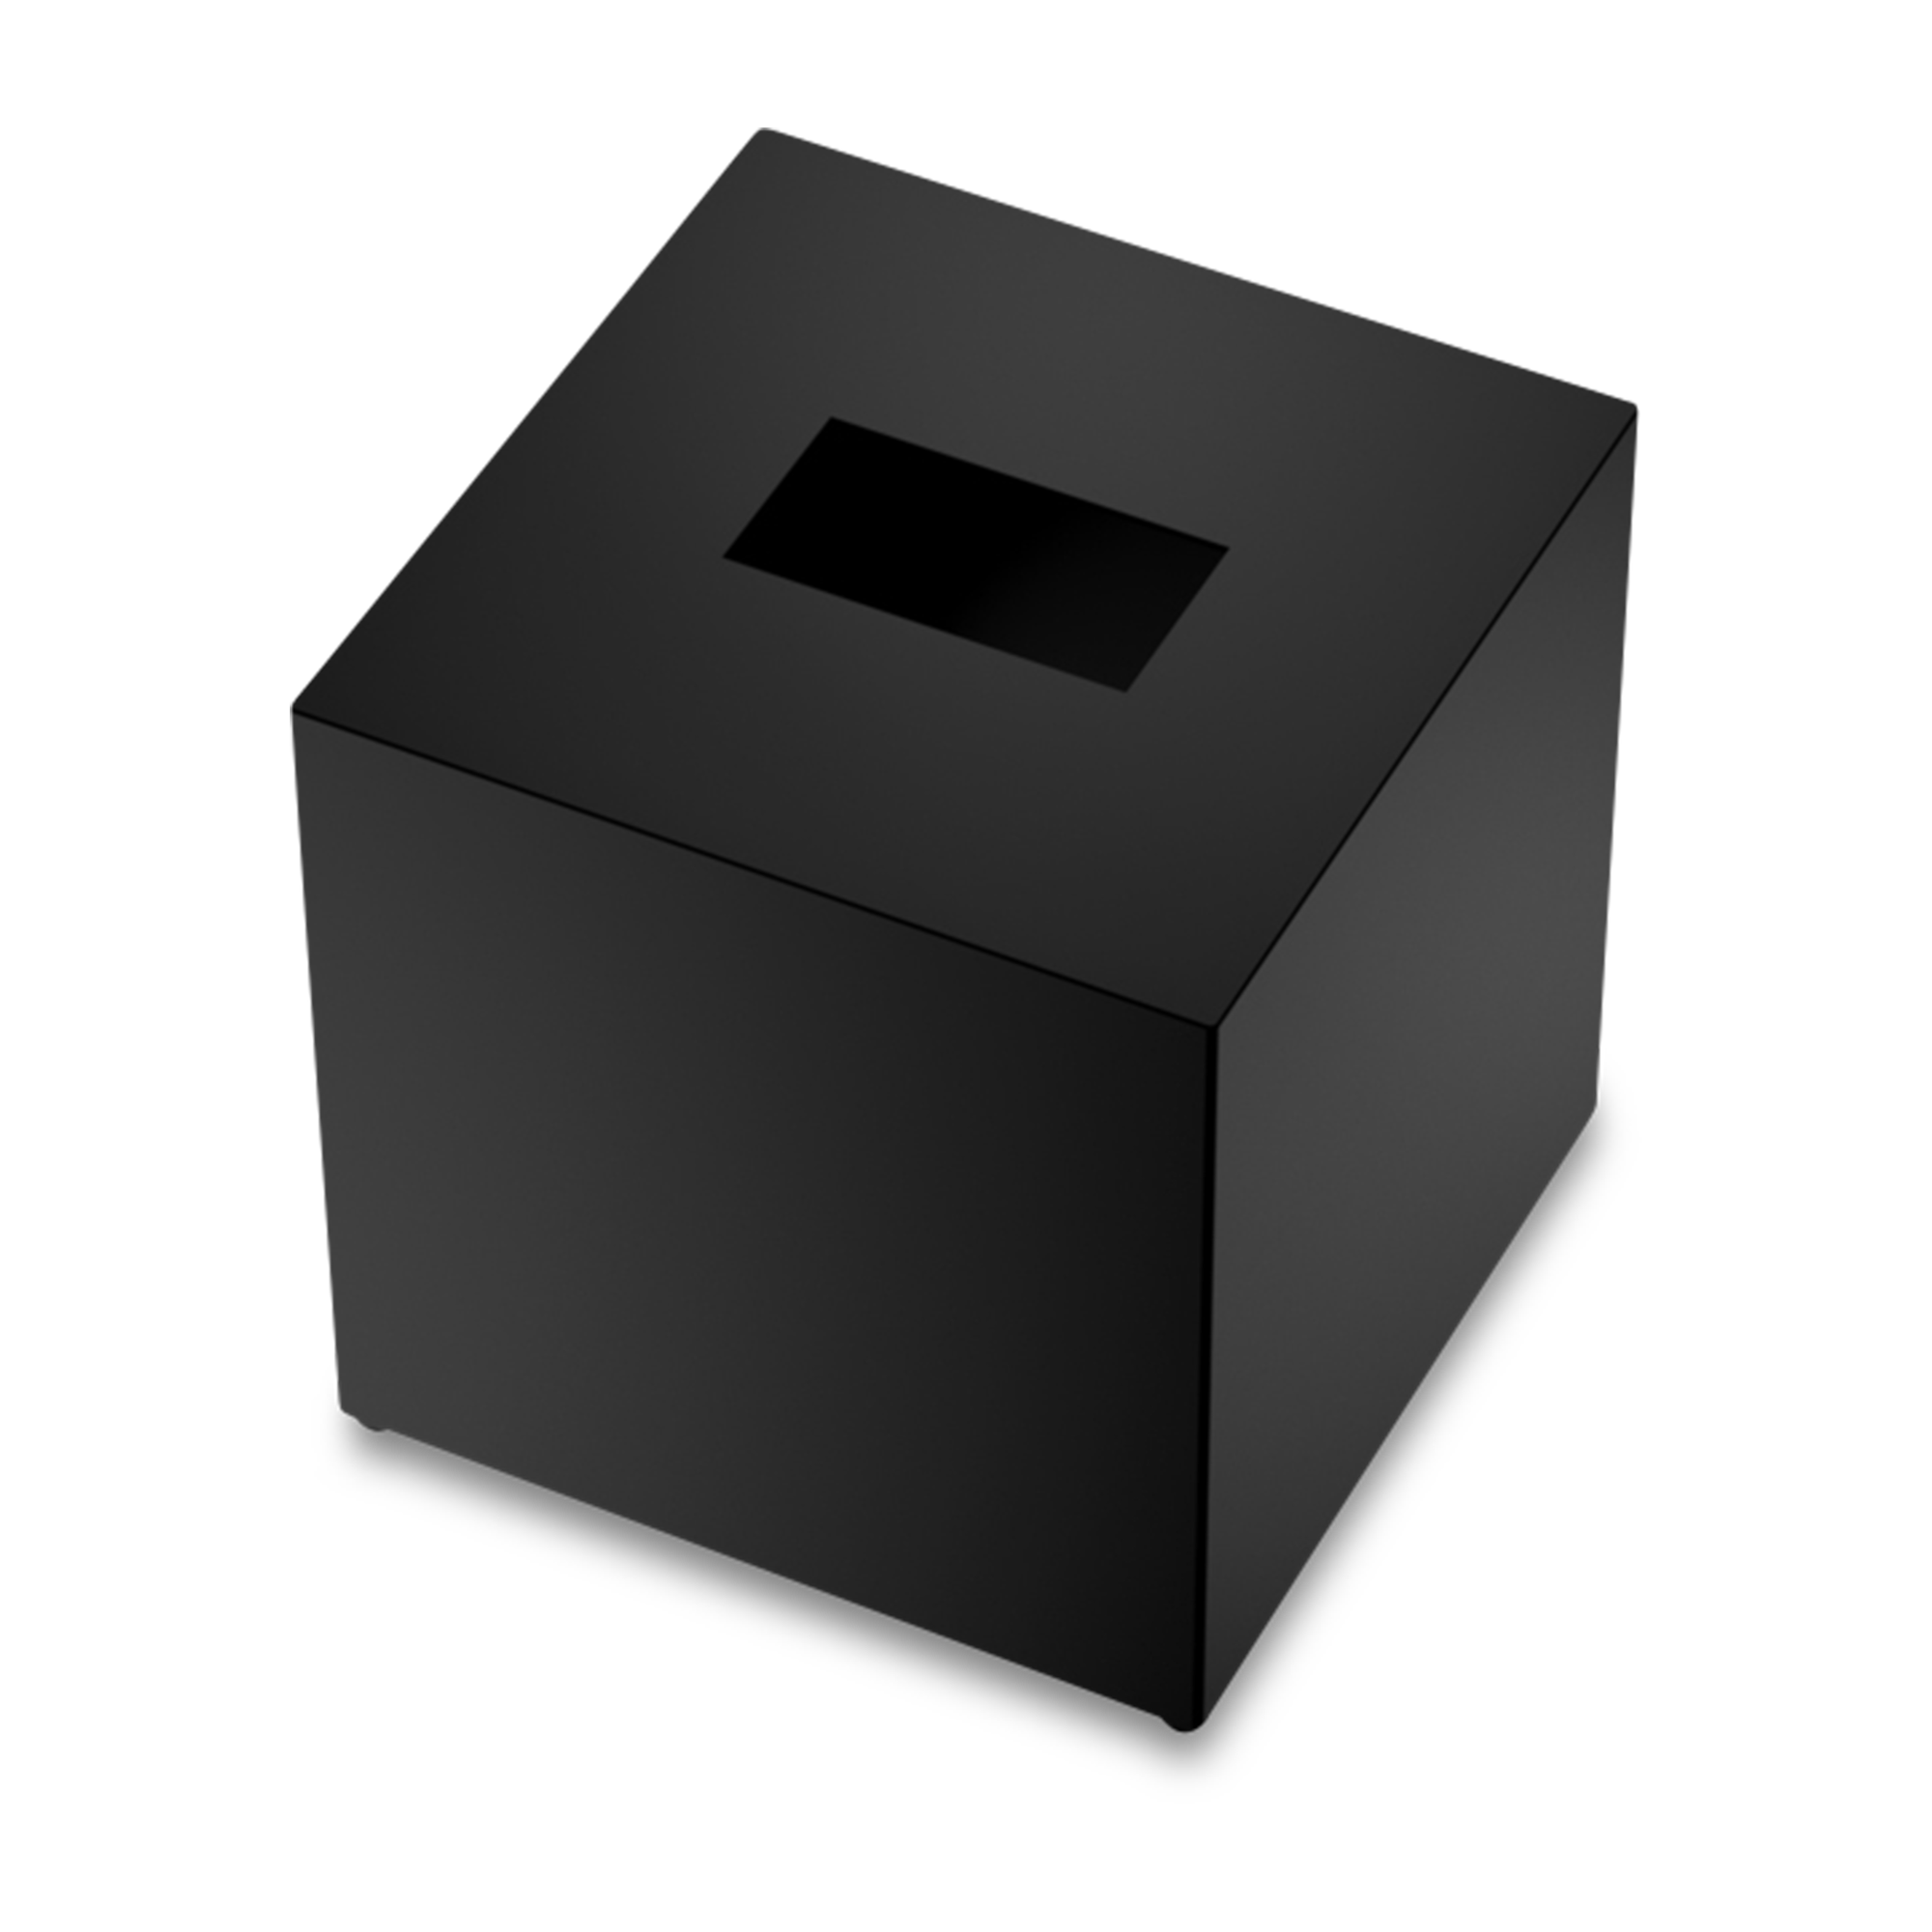 An elegant tissue box featured in matte black.